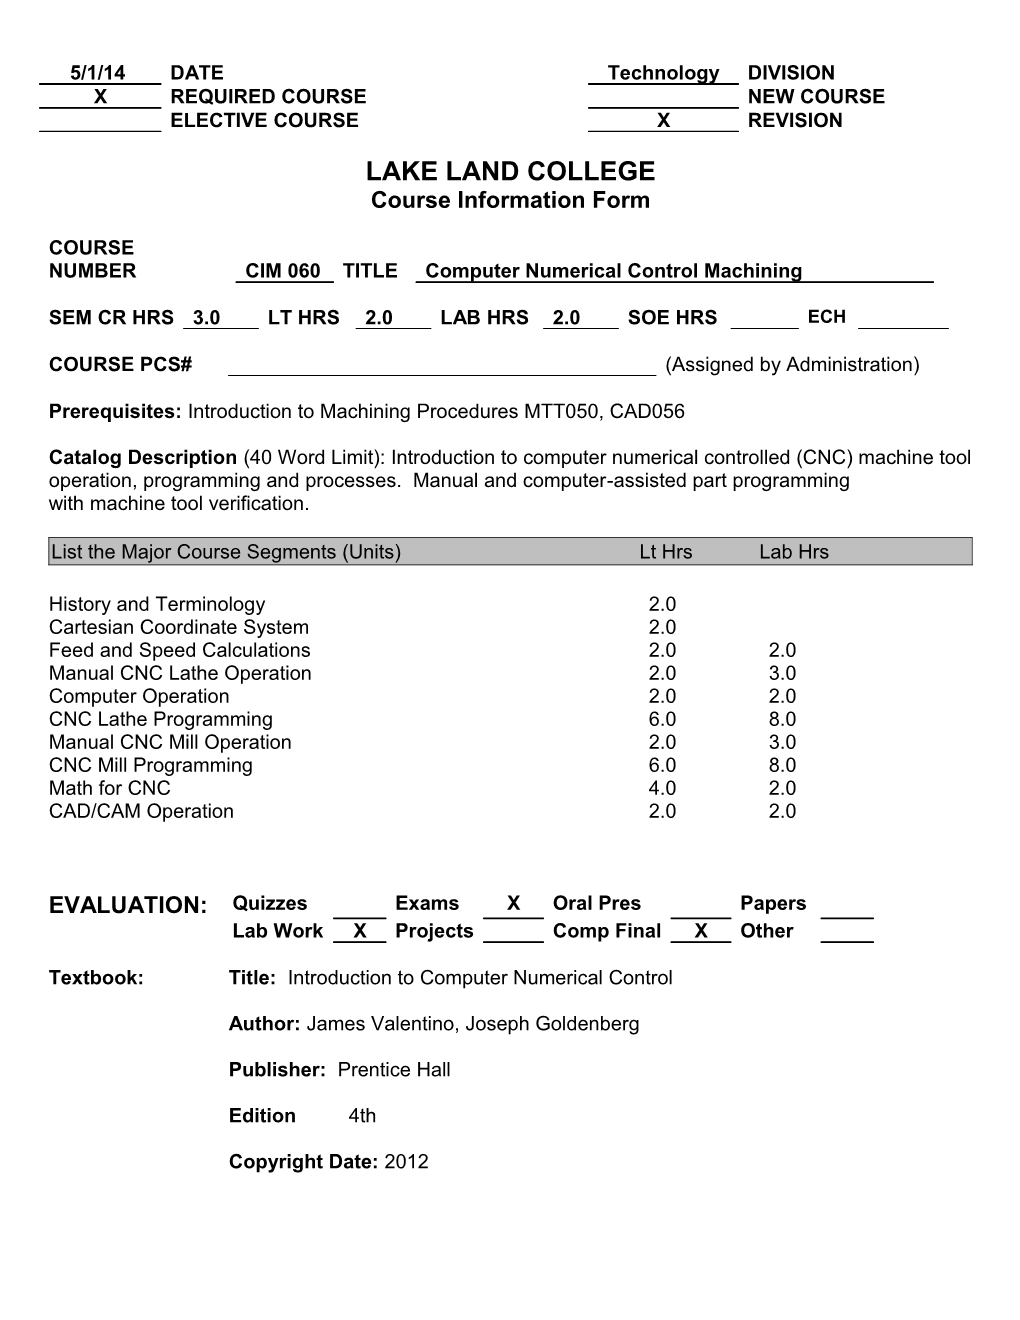 Lake Land College s2